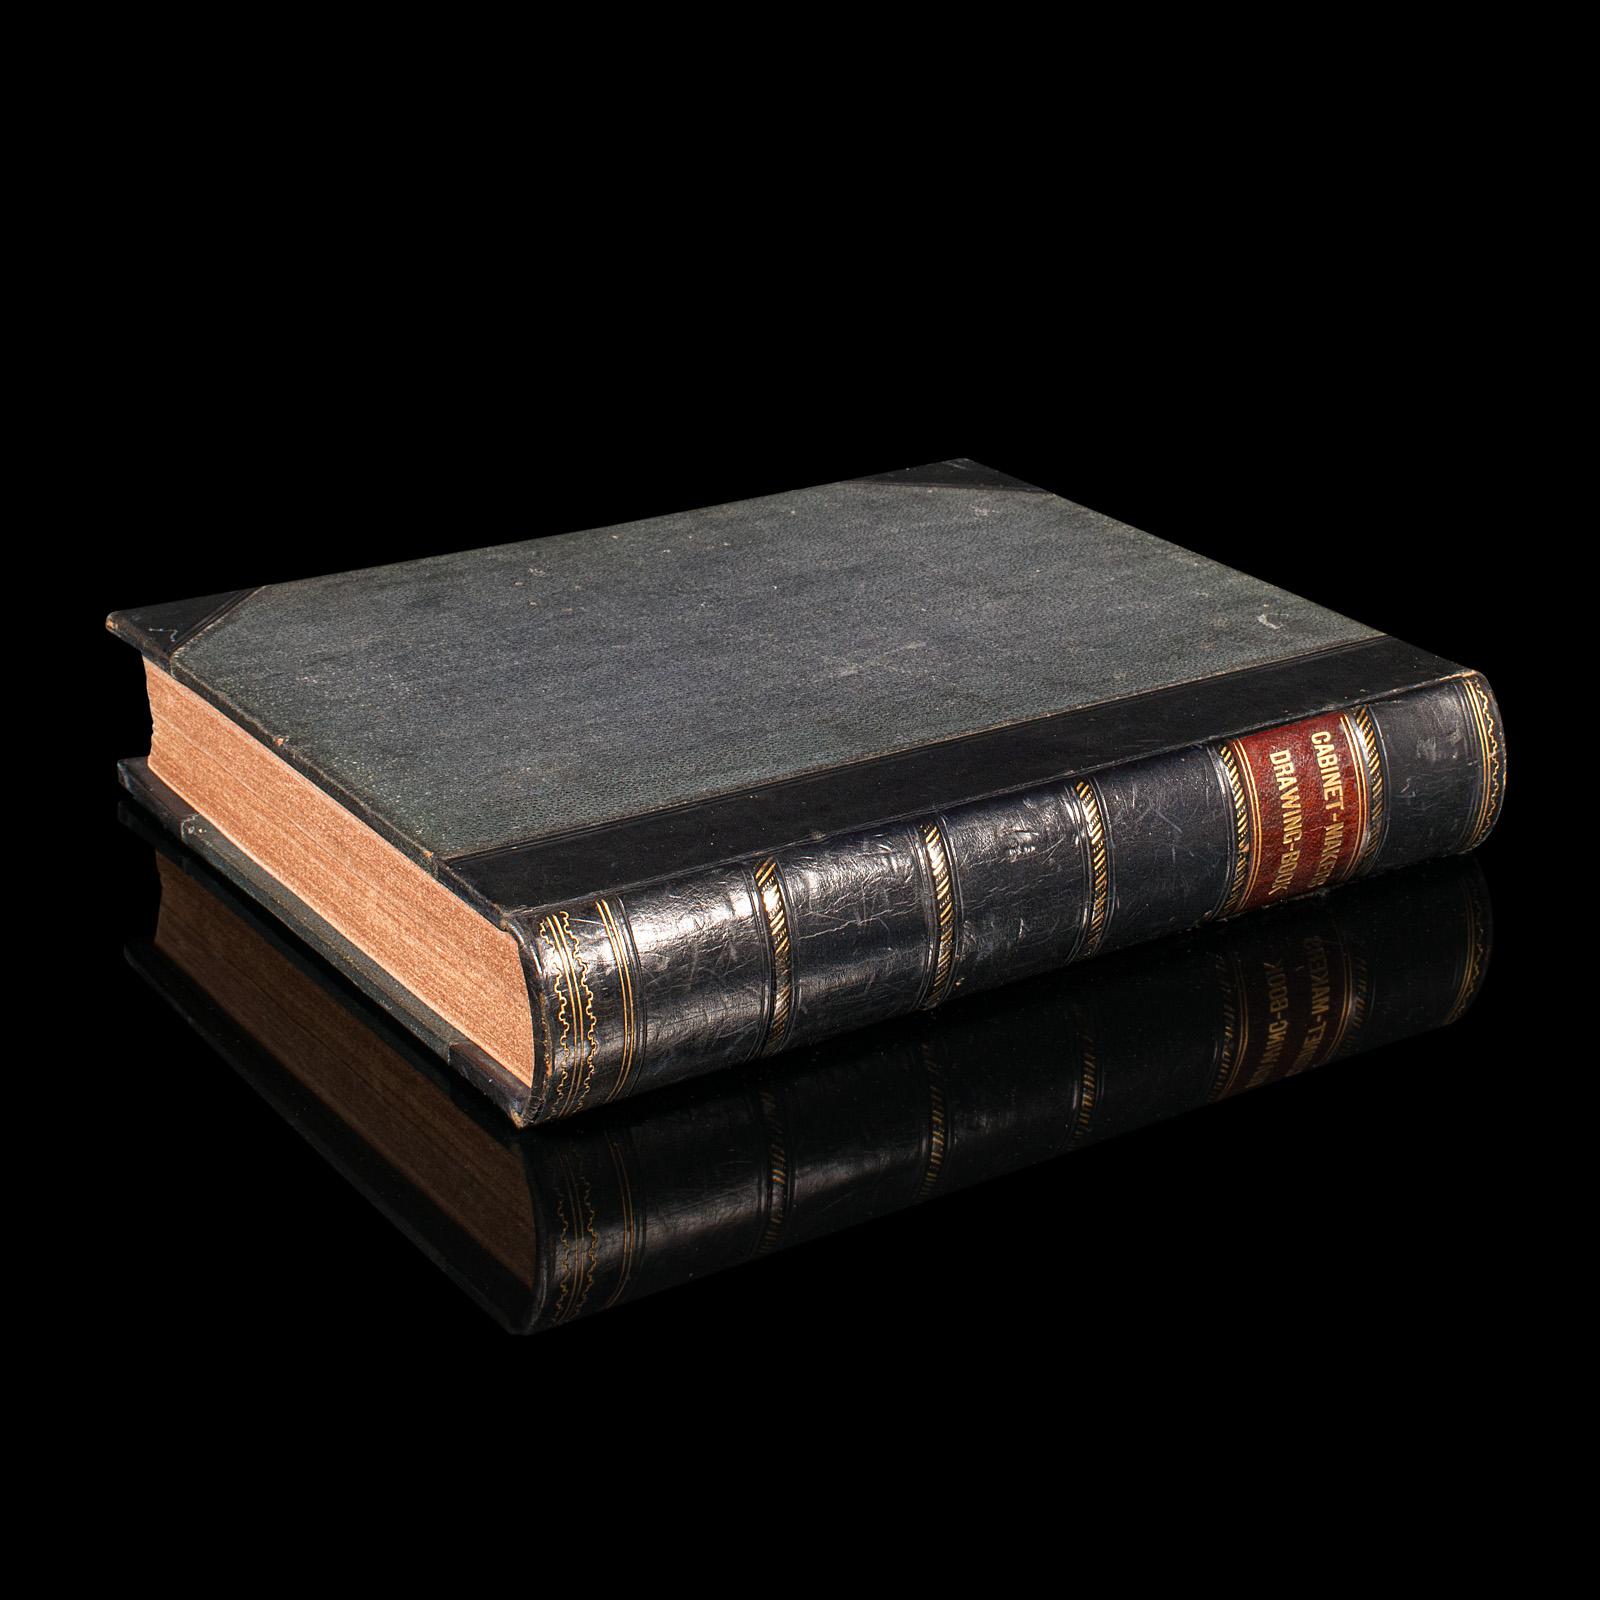 Il s'agit d'un exemplaire ancien du livre de dessins de l'ébéniste Thomas Sheraton. Guide de référence anglais, relié, datant de la période géorgienne, publié en 1793.

Designer de meubles très influent, Thomas Sheraton (1751 - 1806) était une